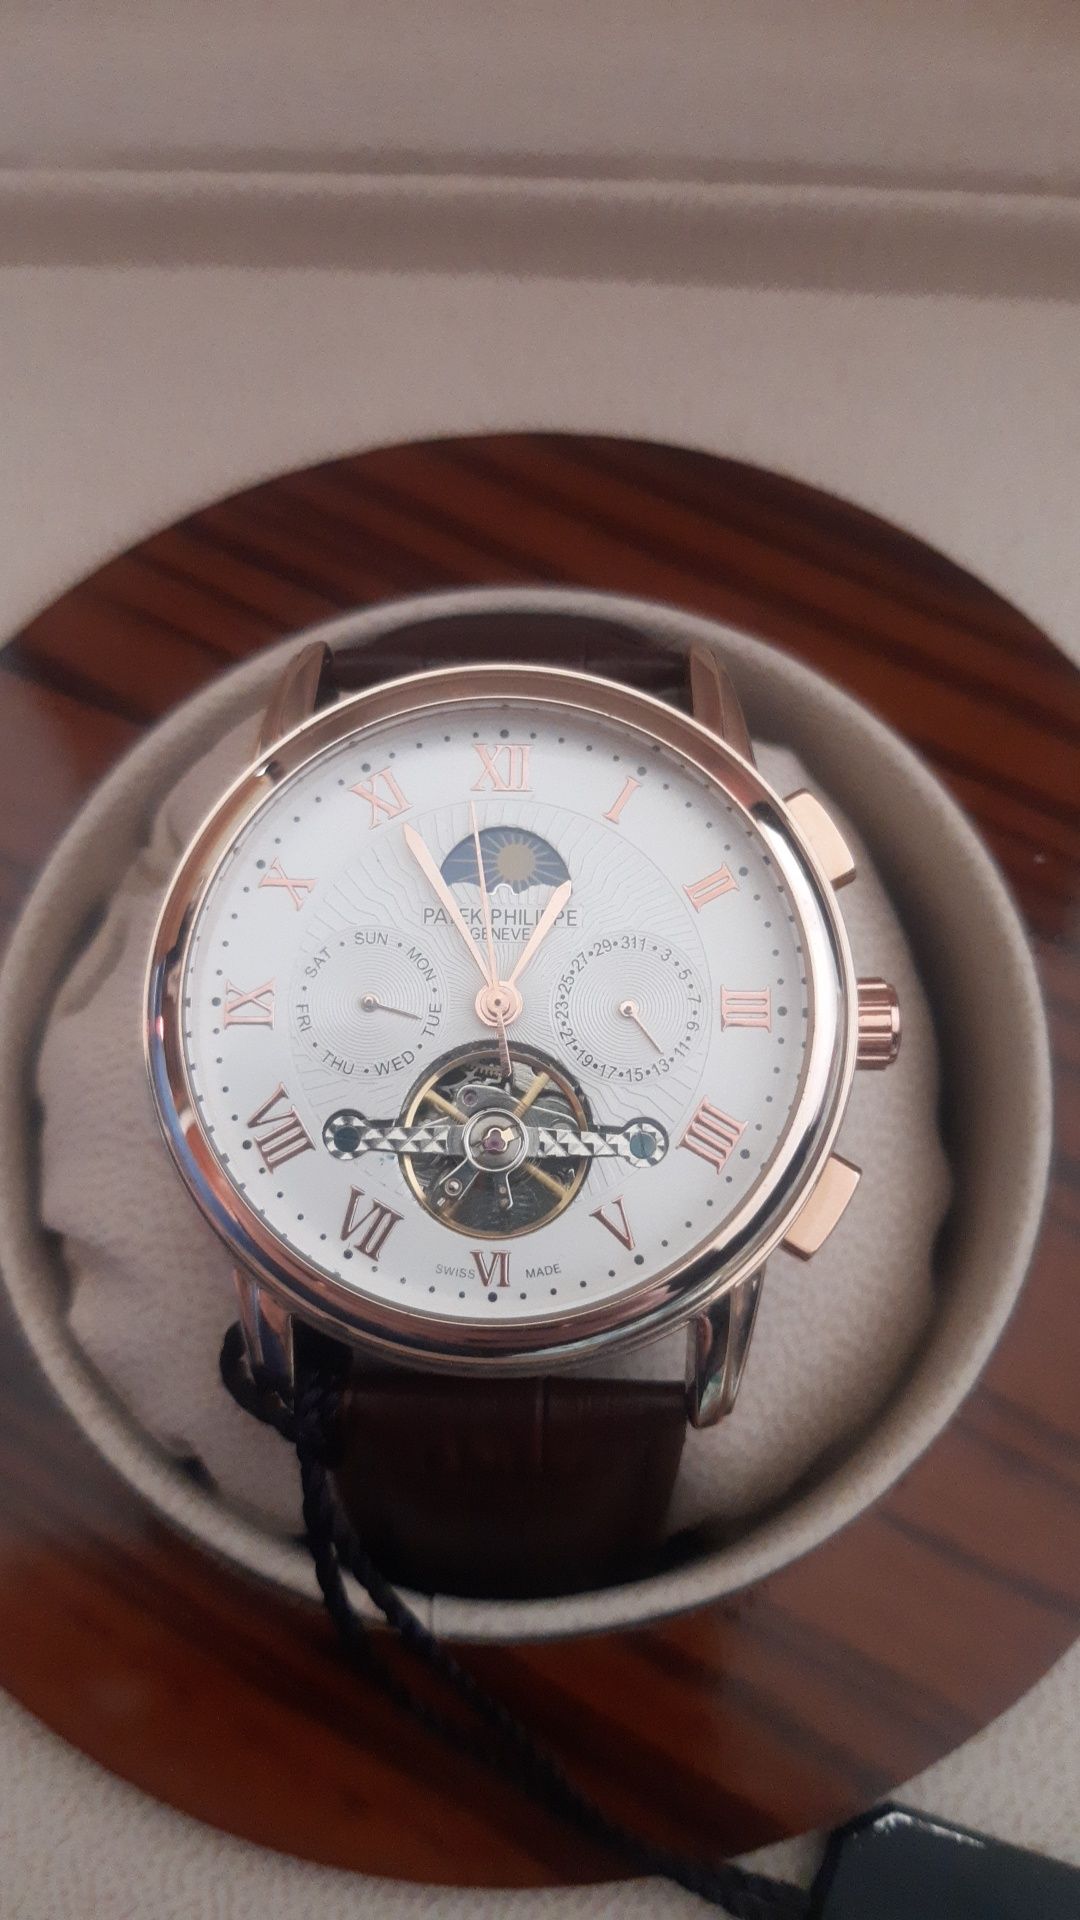 Часы Патек Филипп часы Швейцарии